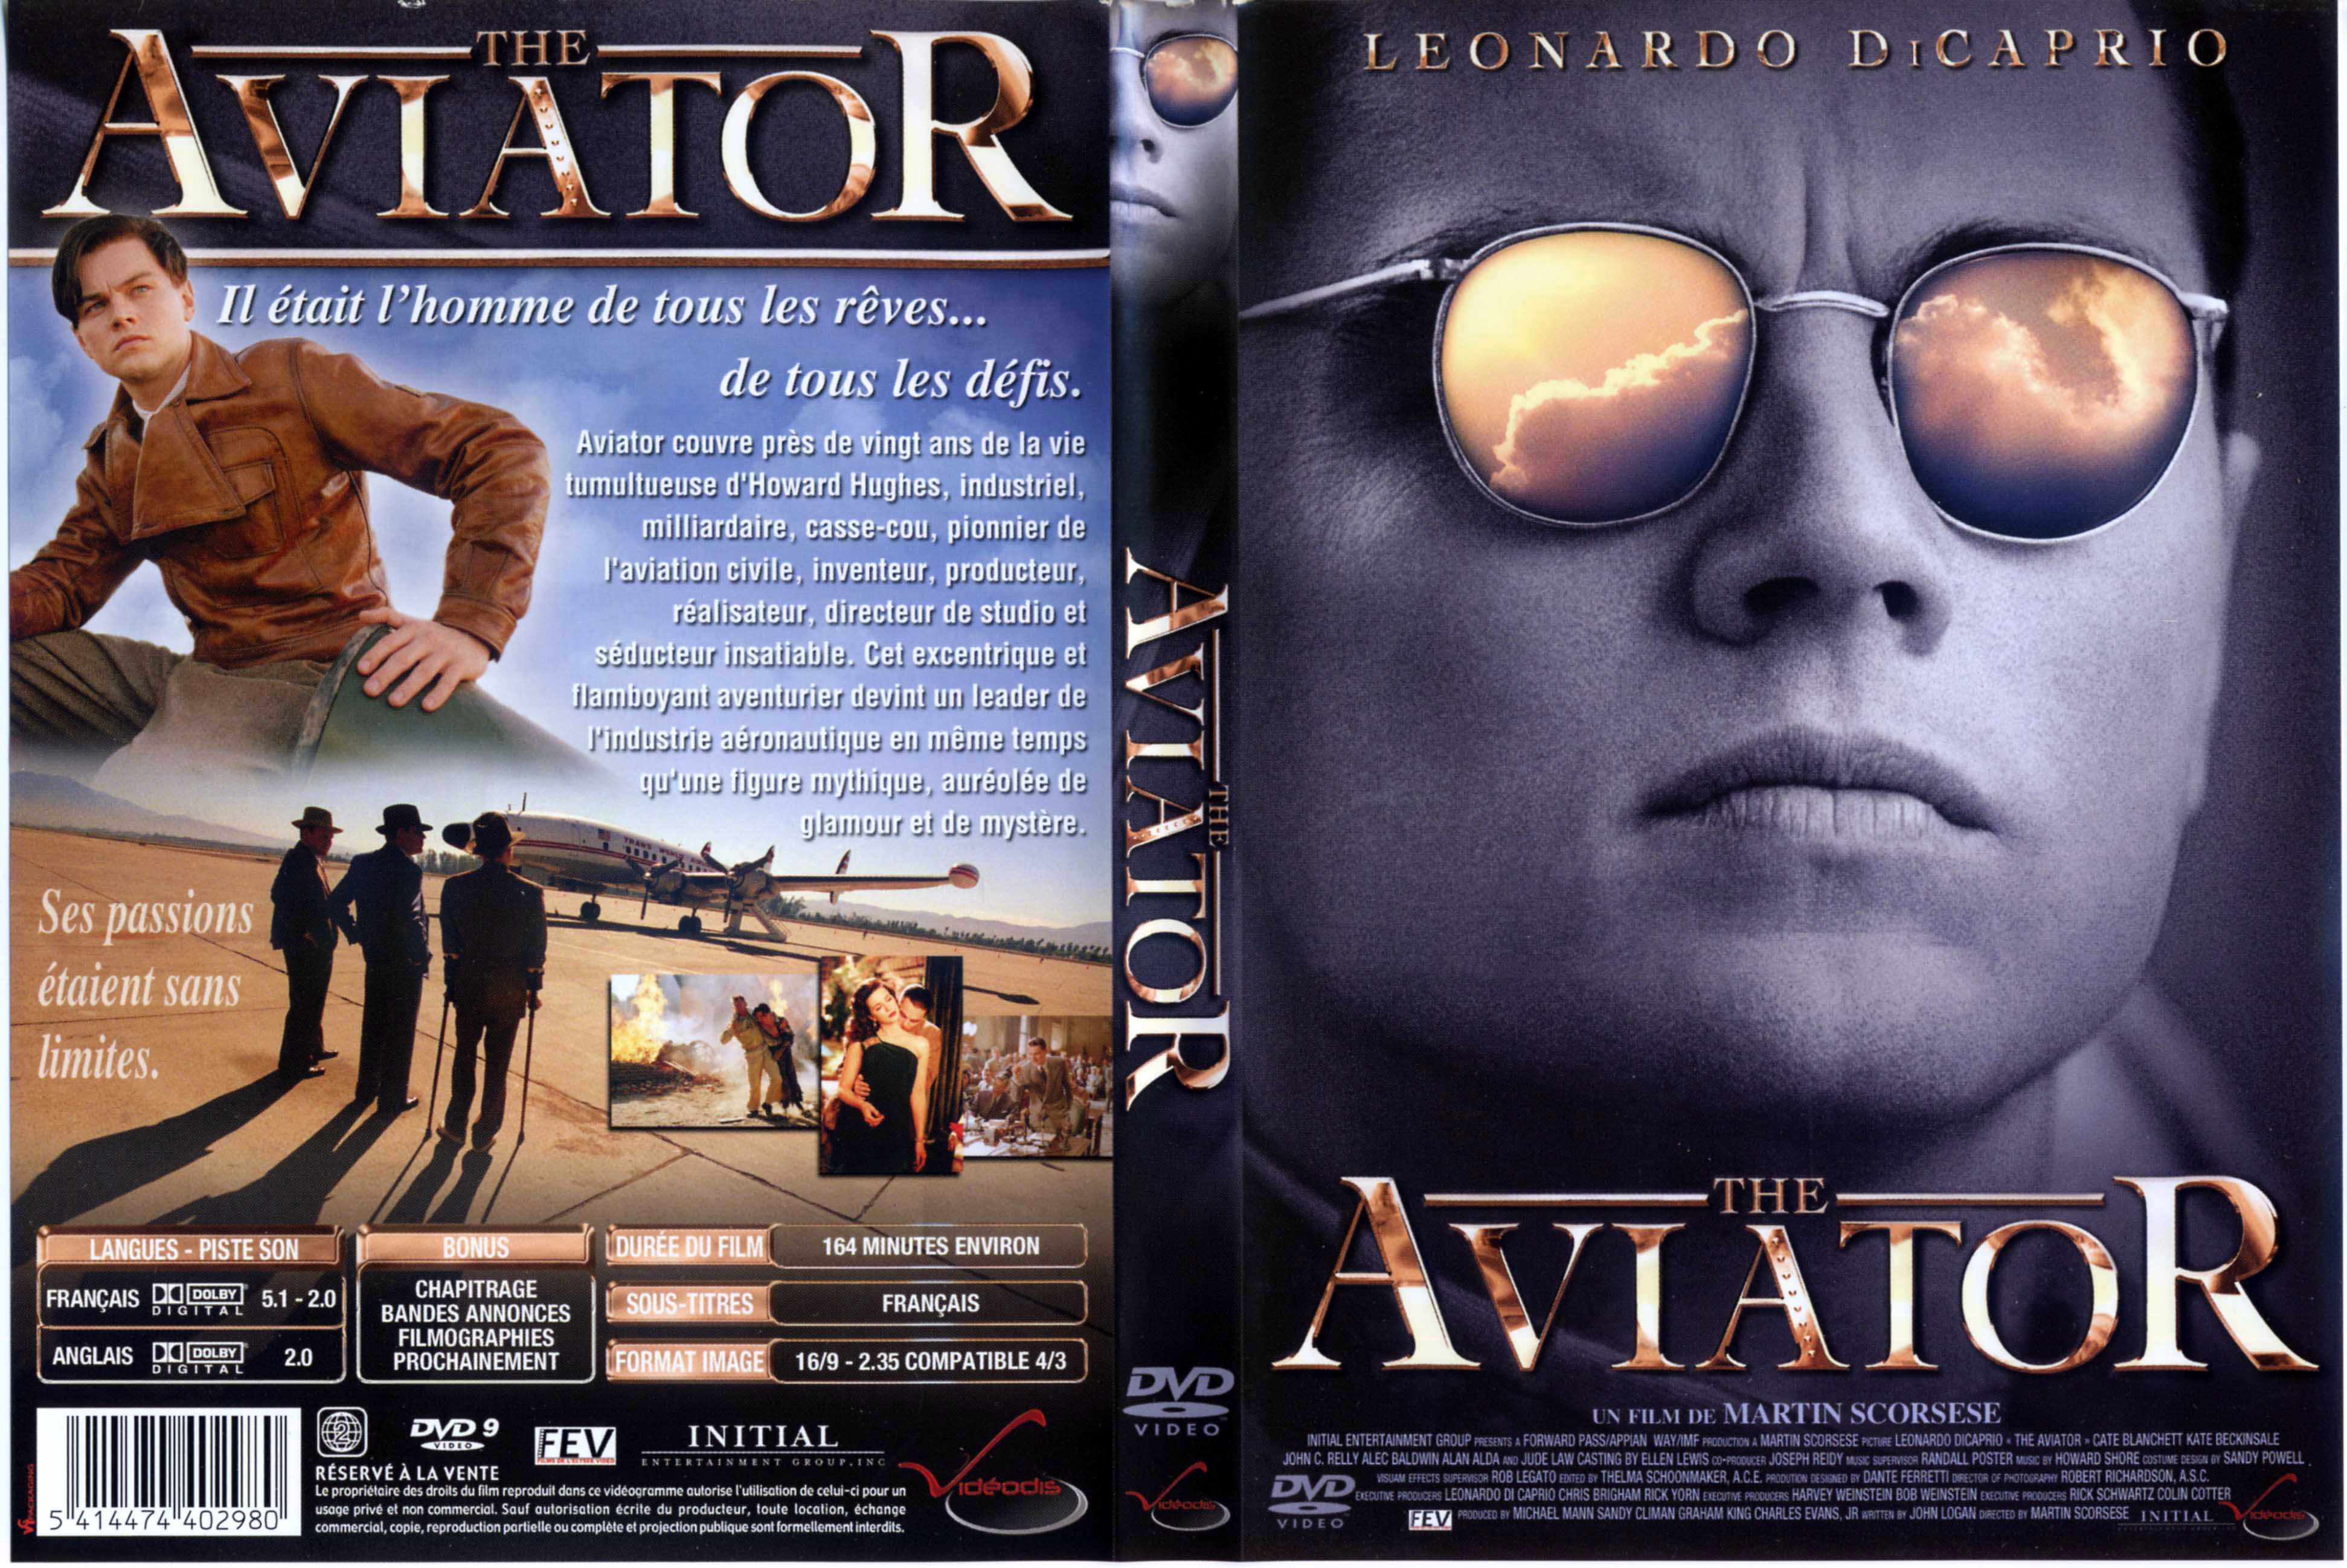 Jaquette DVD Aviator v2